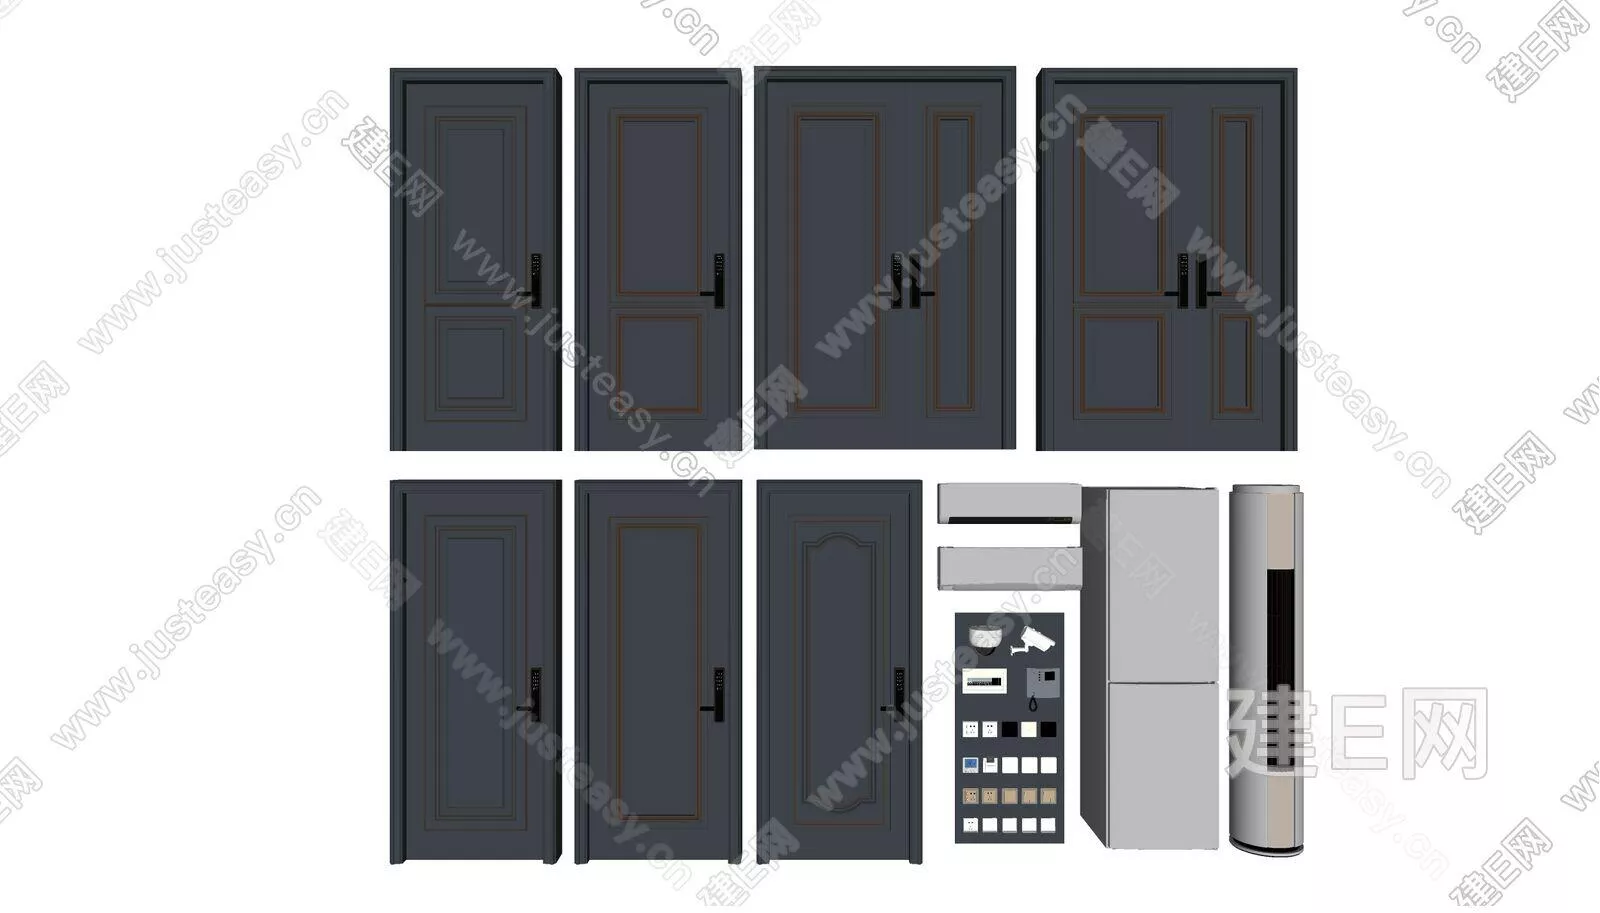 EUROPE DOOR AND WINDOWS - SKETCHUP 3D MODEL - ENSCAPE - 112542193